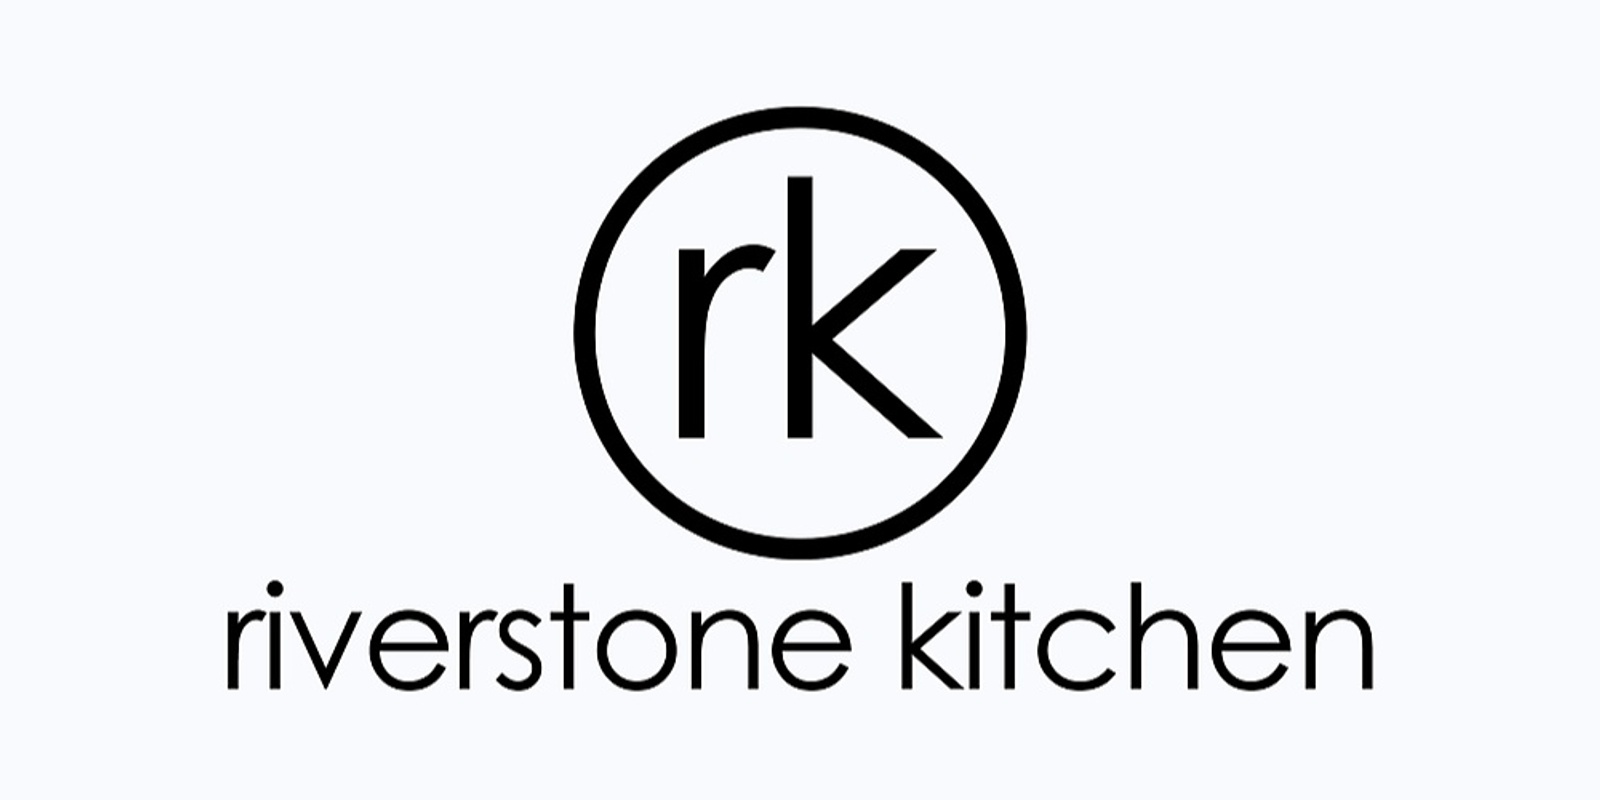 Riverstone Kitchen